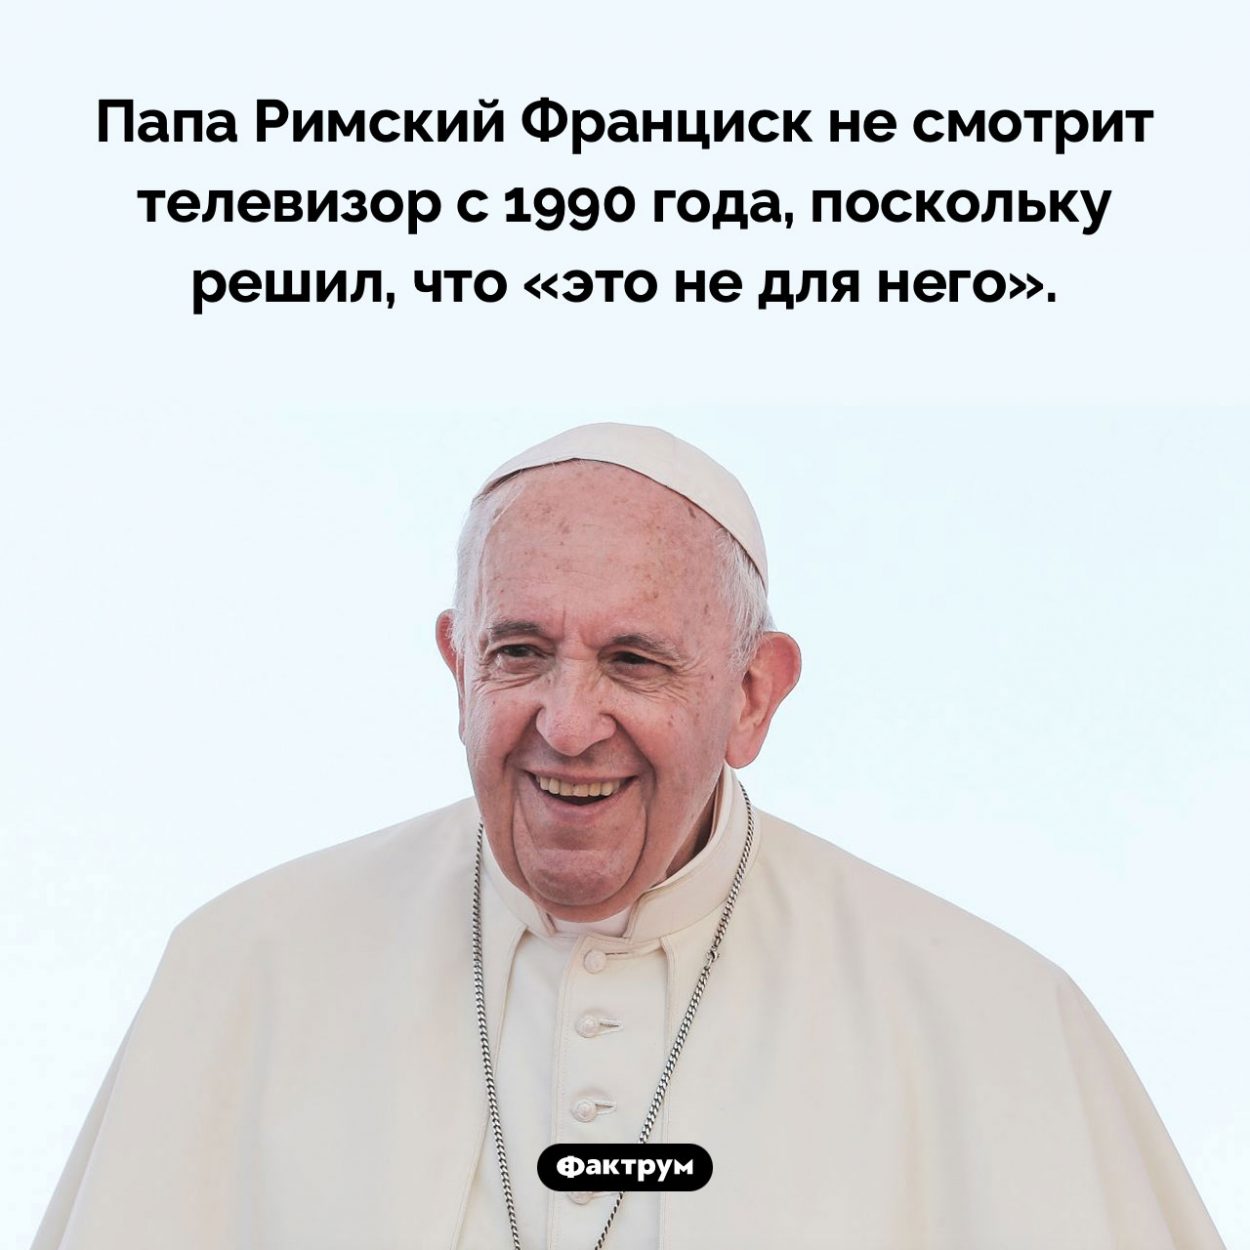 Папа Римский и телевизор. Папа Римский Франциск не смотрит телевизор с 1990 года, поскольку решил, что «это не для него».